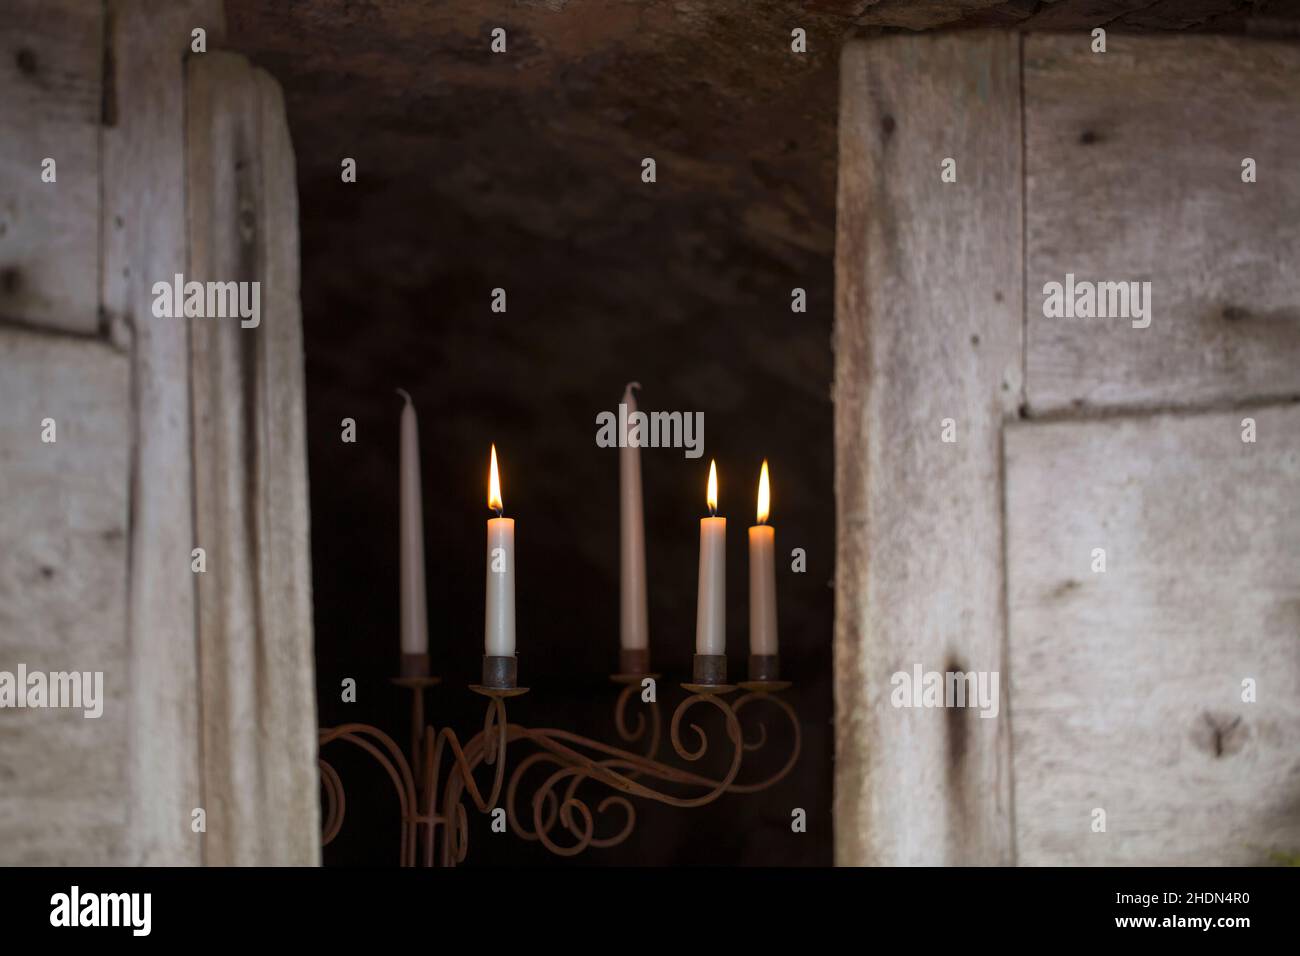 candlelight, candlestick, candlelights, candlesticks Stock Photo